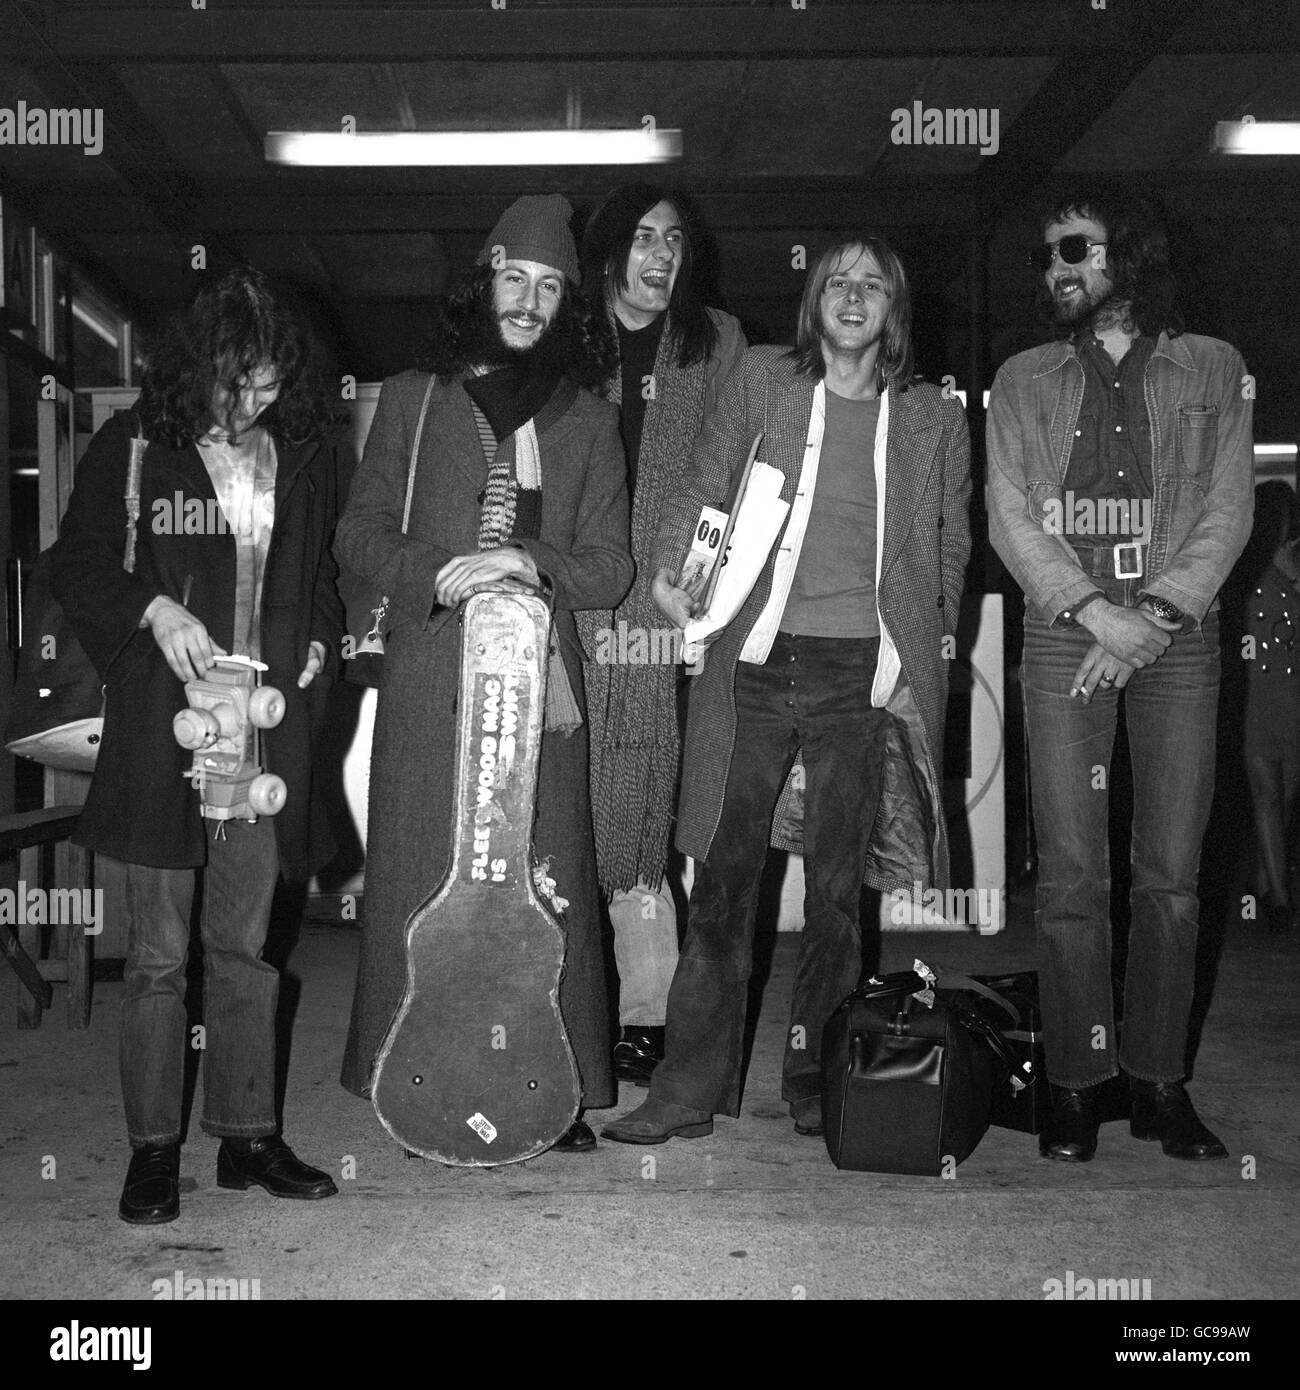 Band on the Move, Londres, 1970. Groupe de rock Fleetwood Mac à l'aéroport de Londres. Banque D'Images